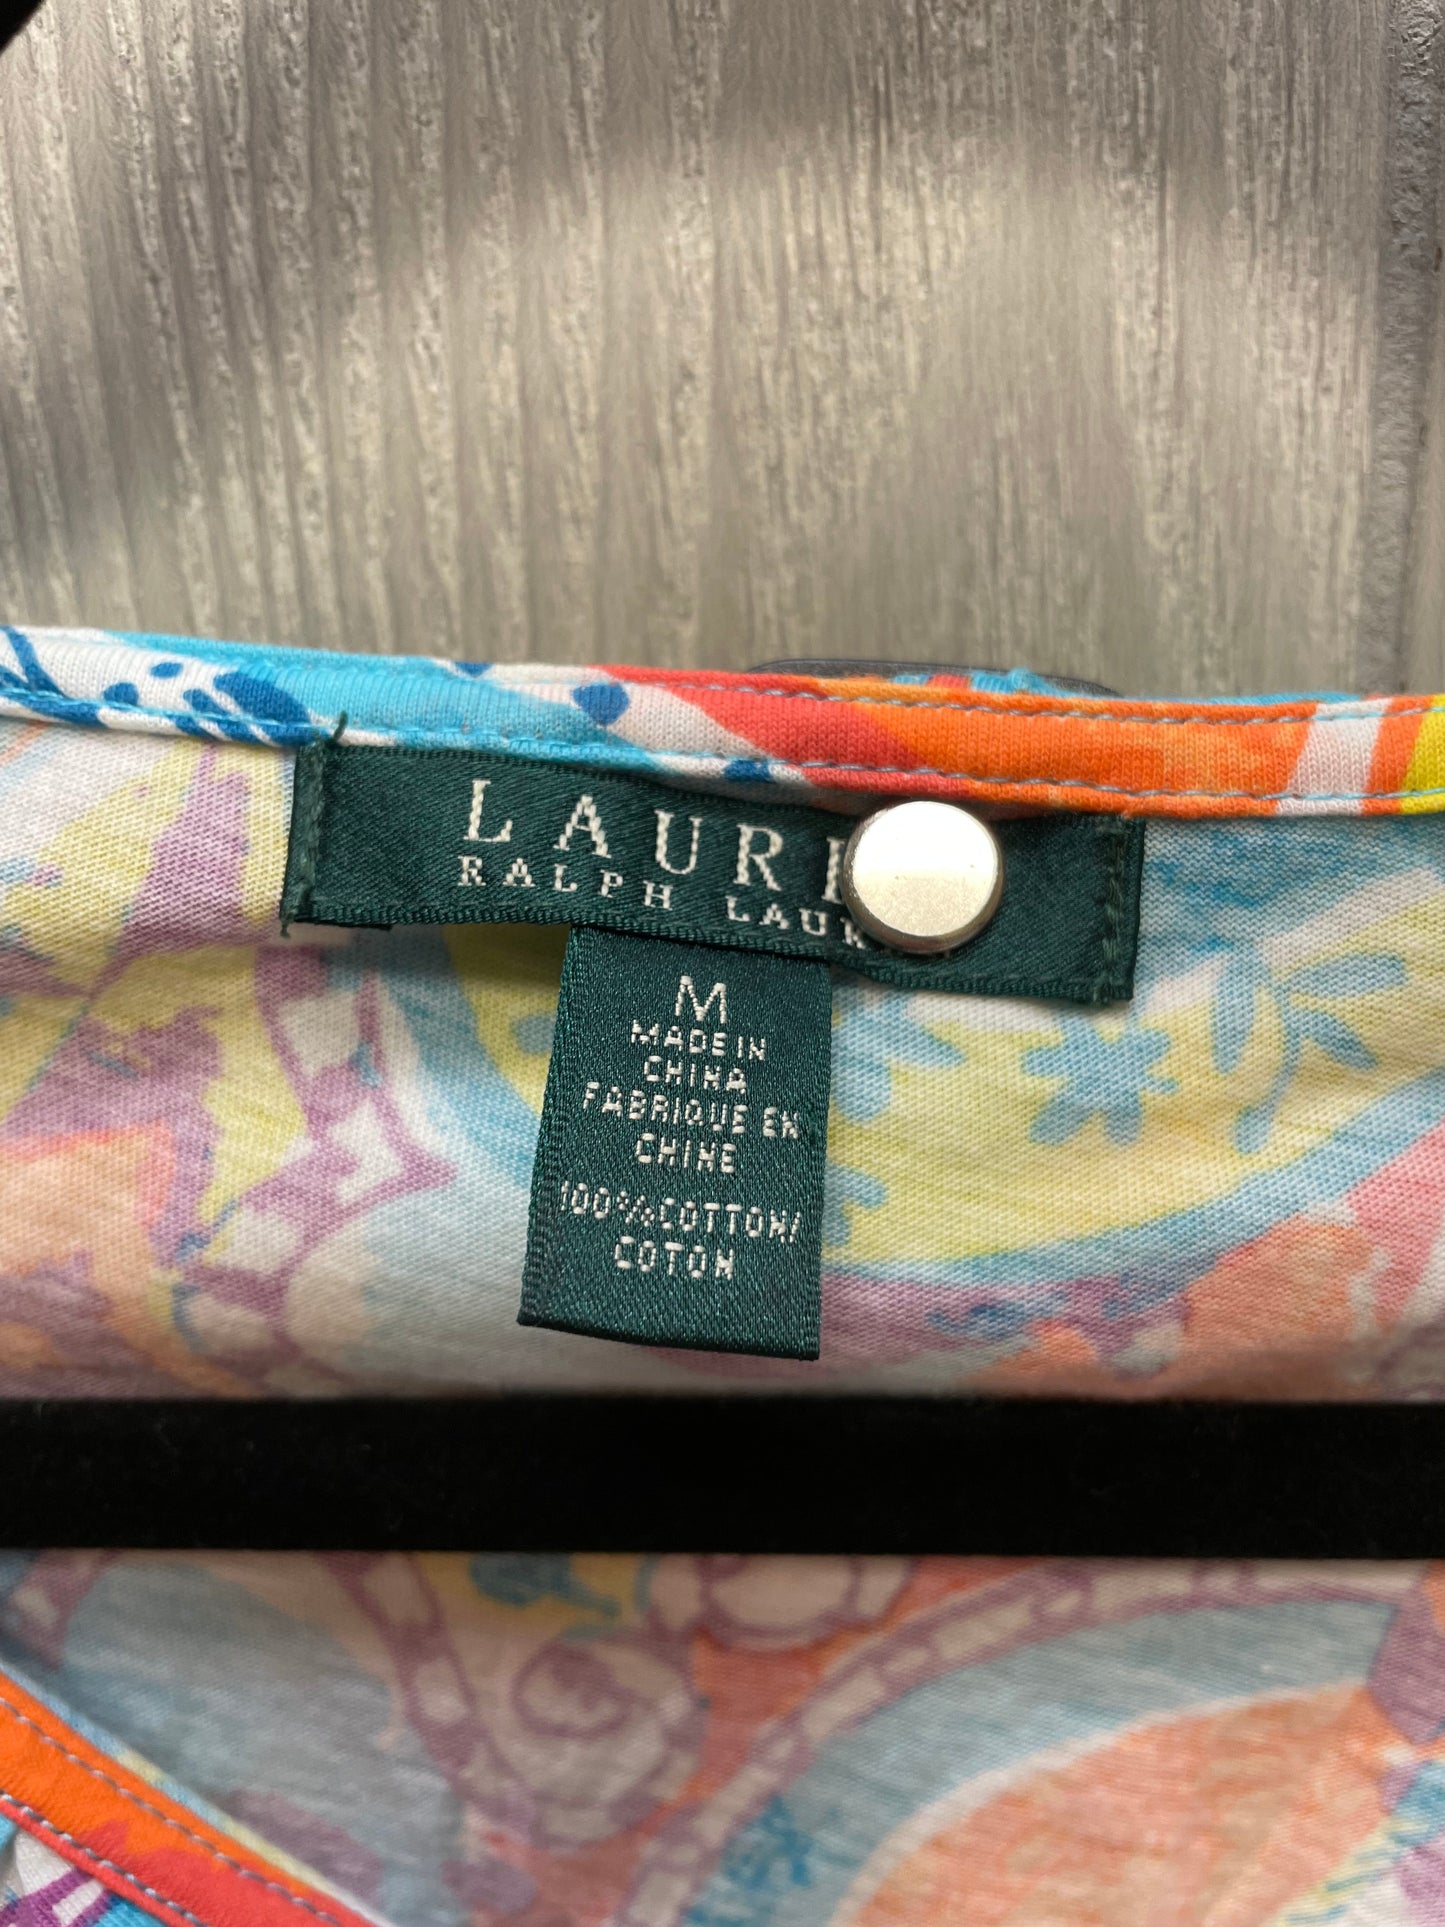 Multi-colored Top Short Sleeve Lauren By Ralph Lauren, Size M